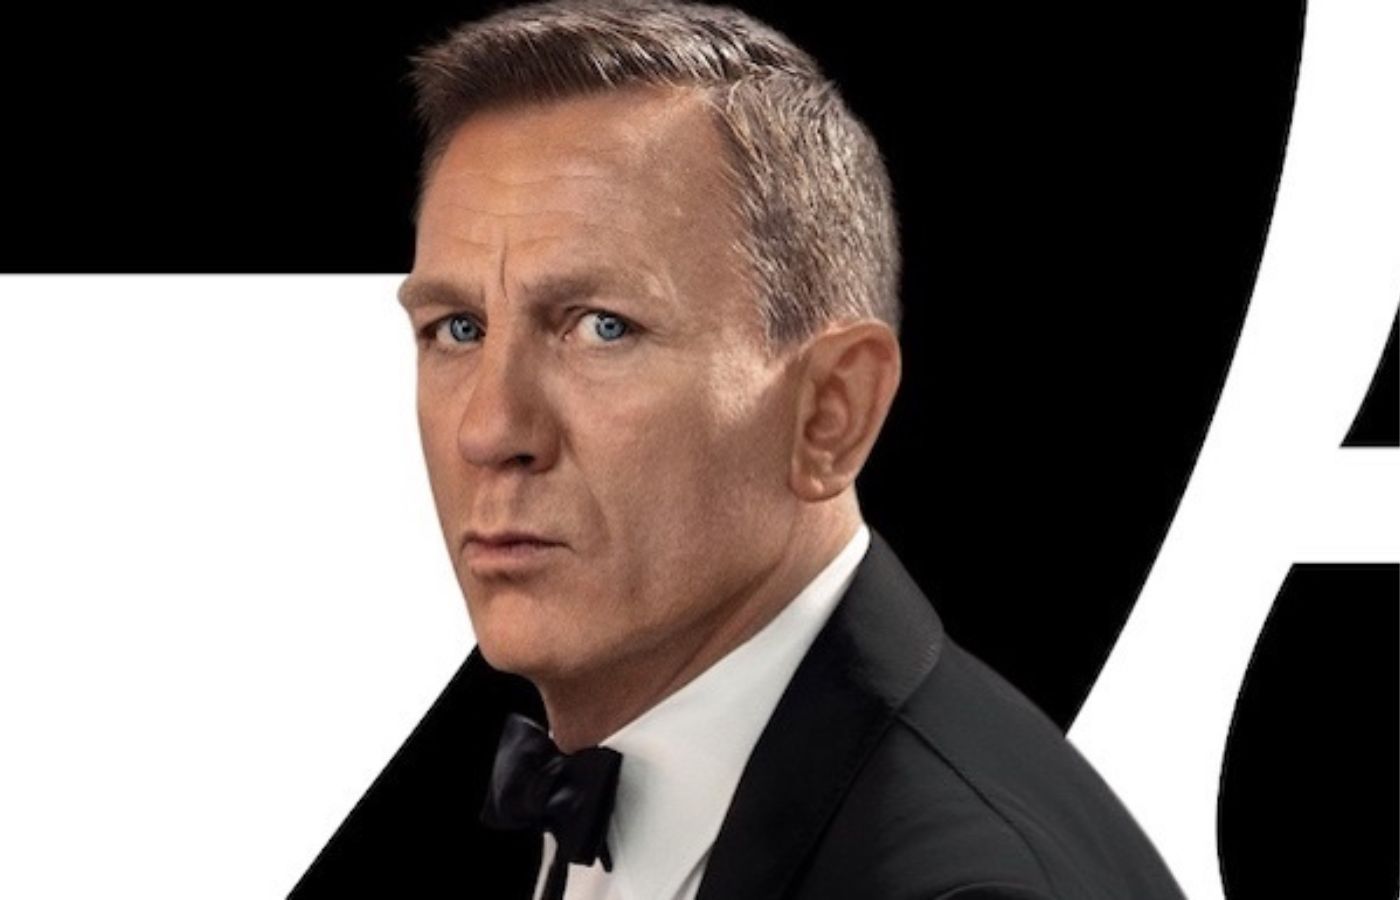 Novo 007 recebe atualização de produtora; confira! - Blog Hiperion